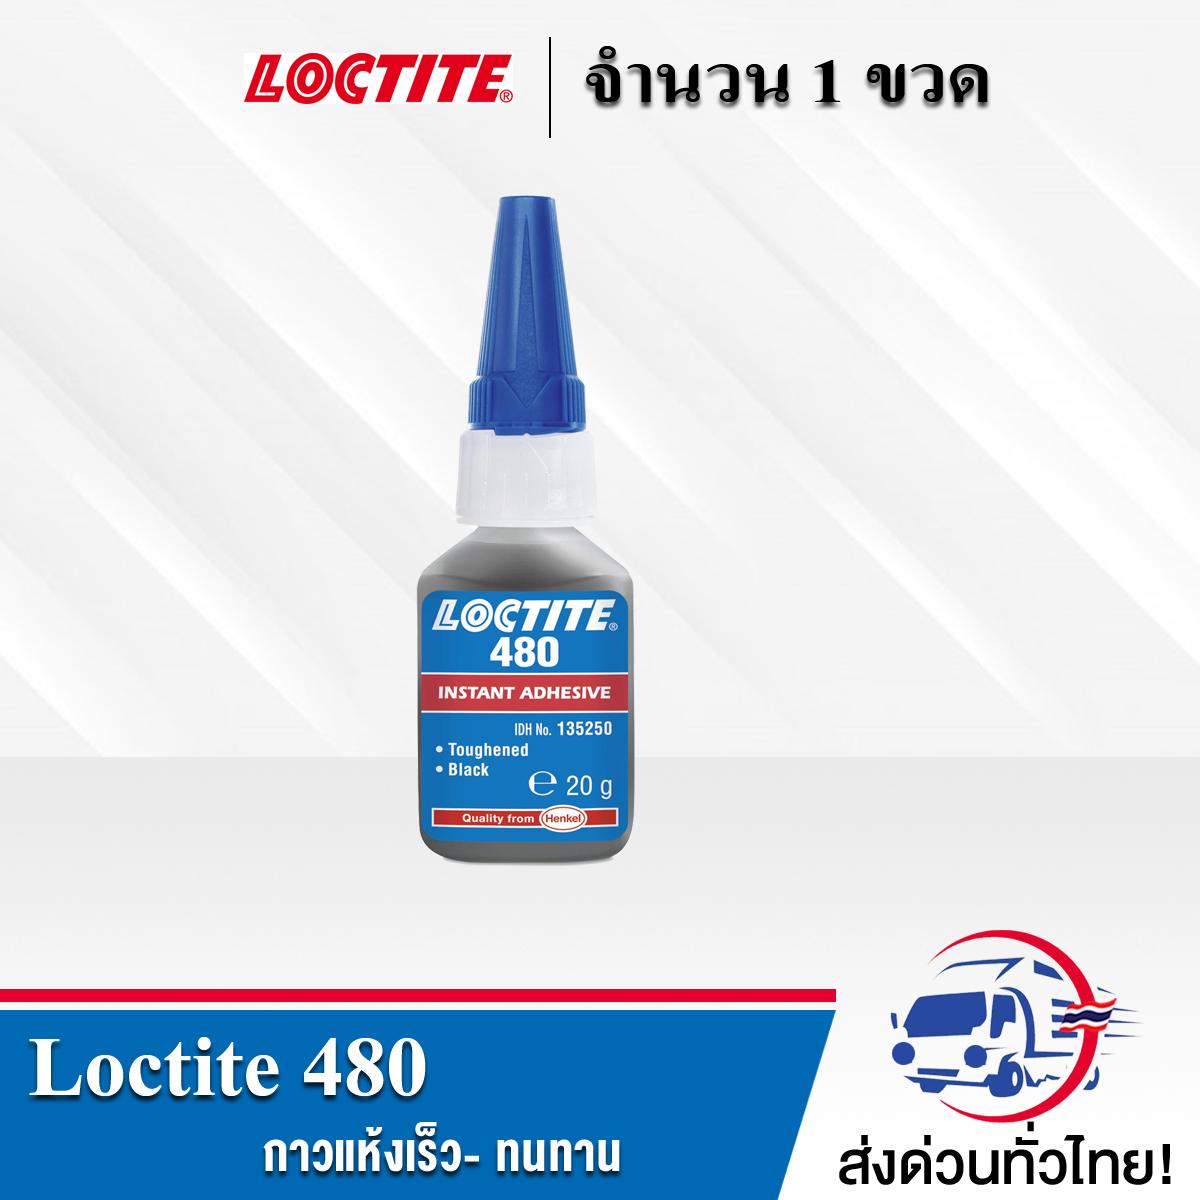 LOCTITE 480 กาวแห้งเร็ว- ทนทาน เหมาะกับการยึดติดโลหะกับโลหะ ยางกับแม่เหล็ก สามารถทนได้ดีต่อสภาพแวดล้อมที่มีความชื่น เซตตัวได้เร็ว ขนาด 20 ml.